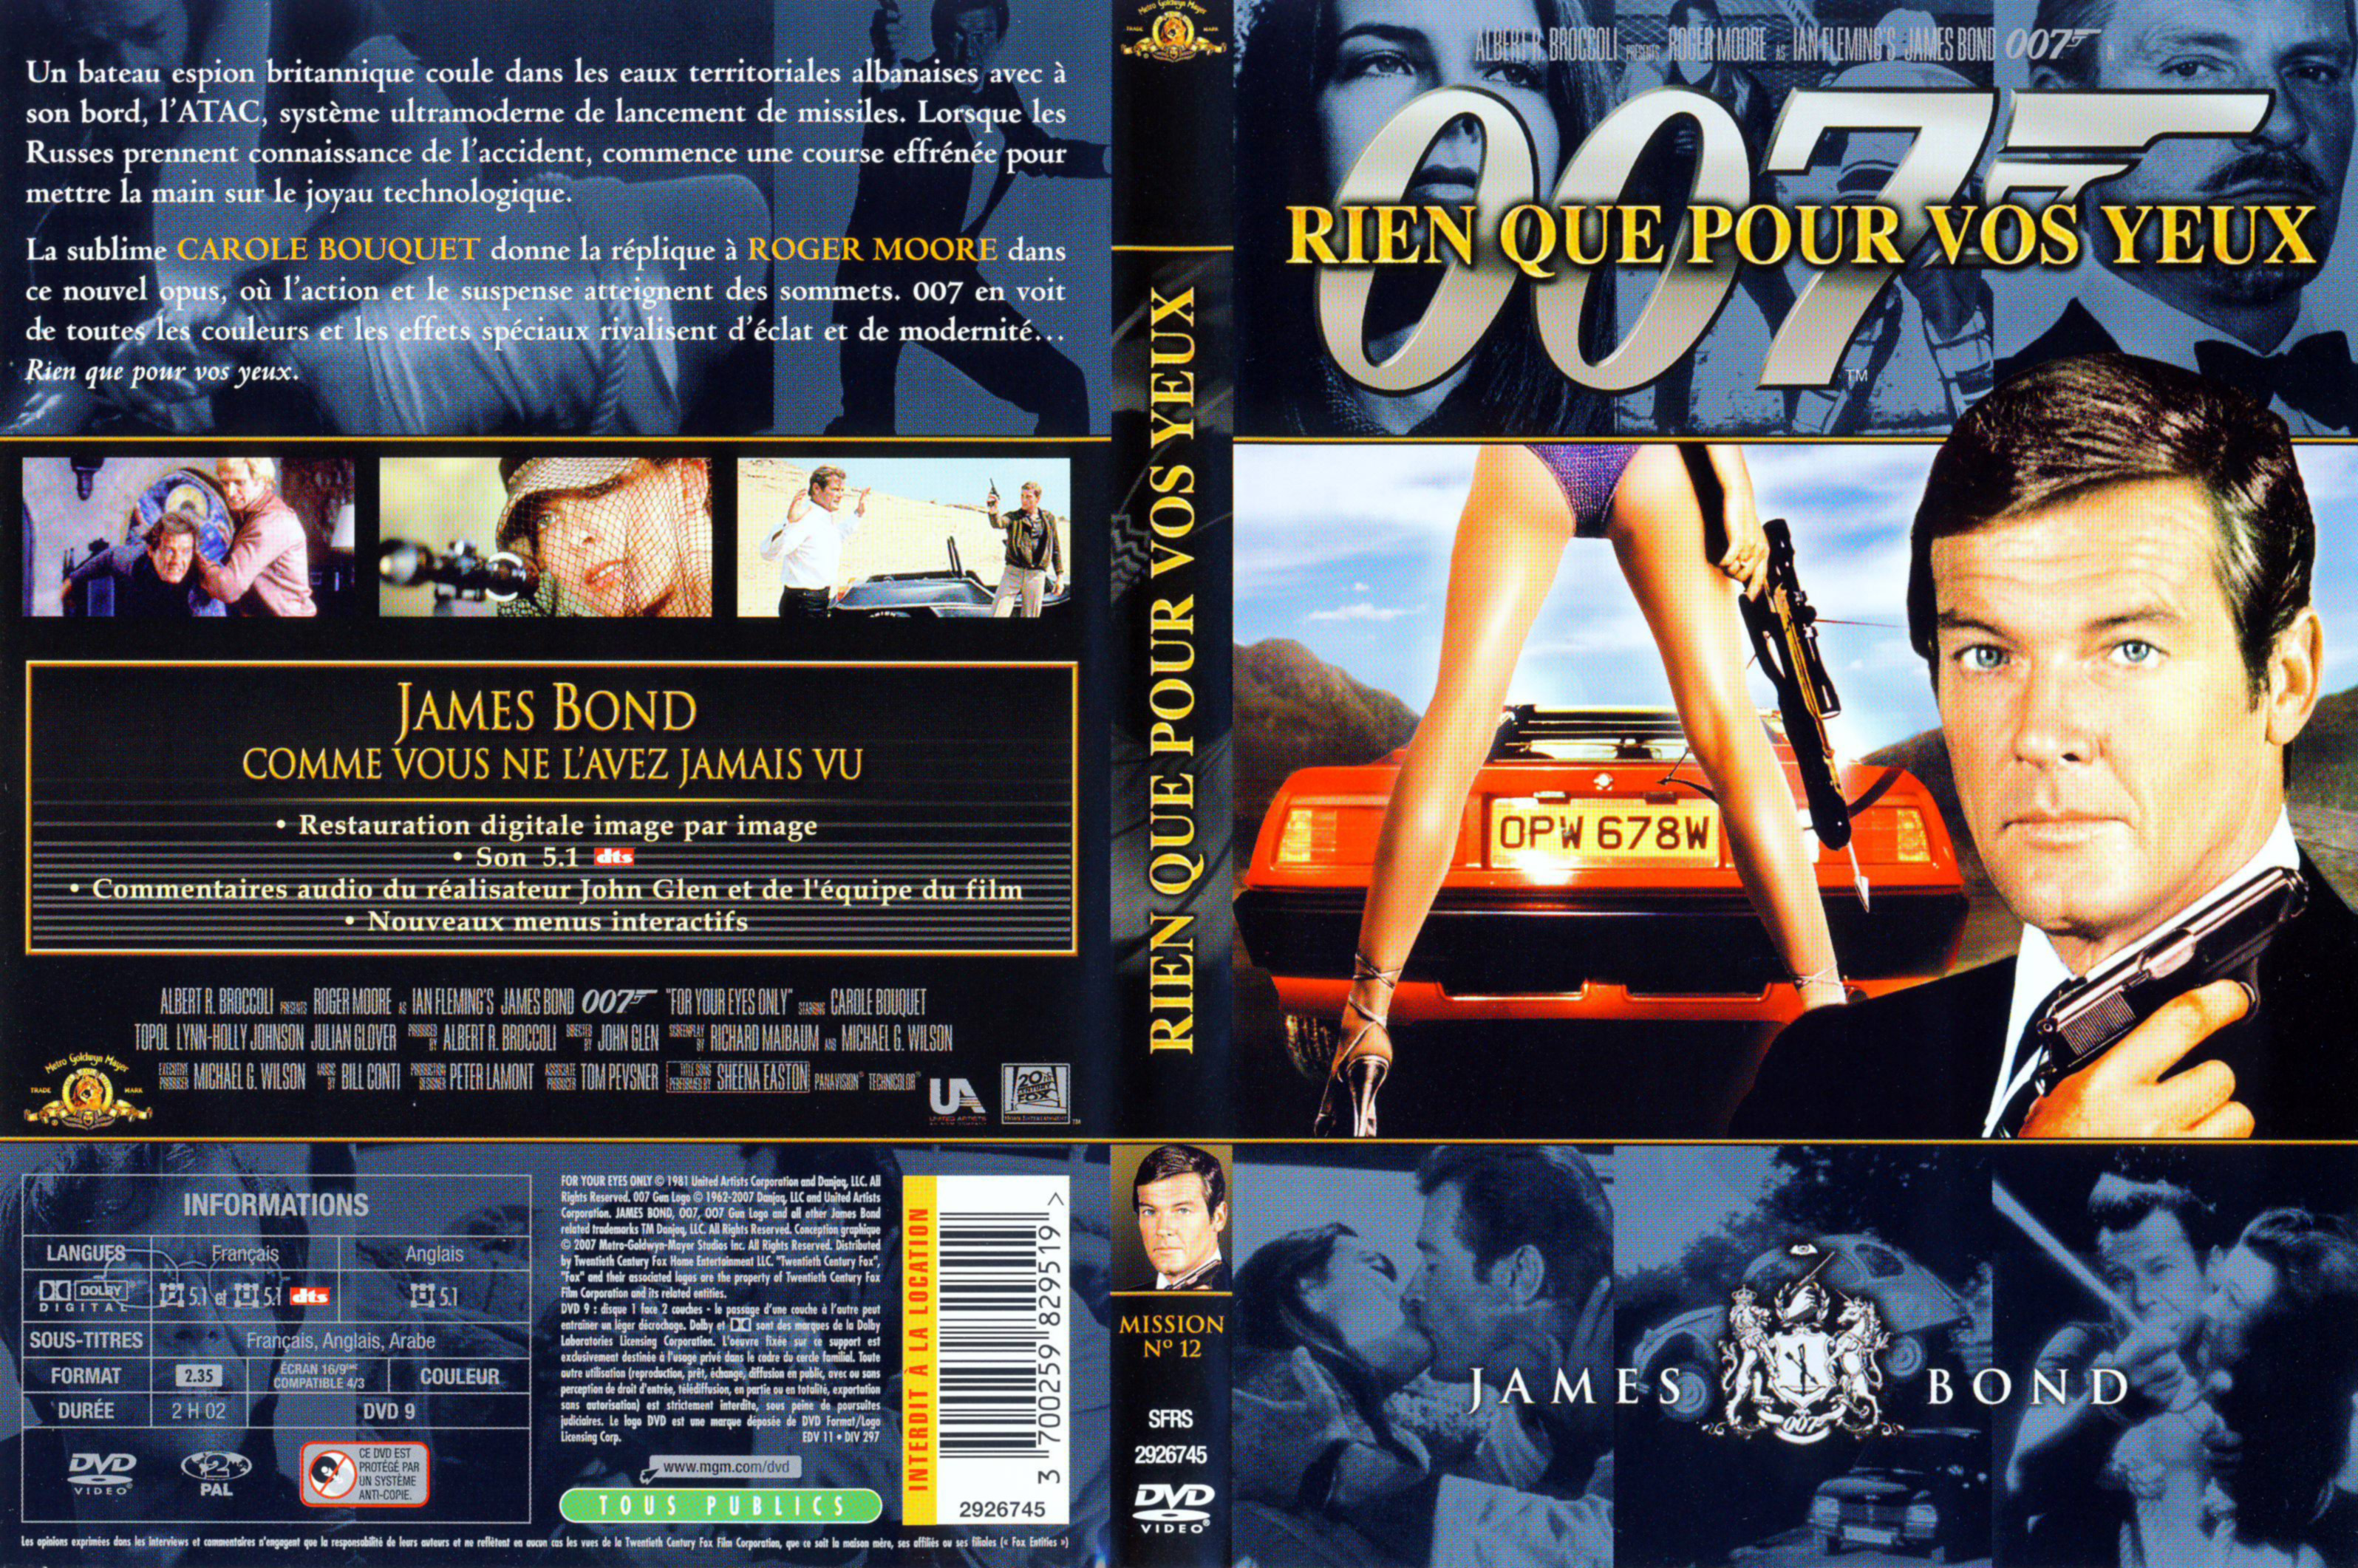 Jaquette DVD James Bond 007 Rien que pour vos yeux v2